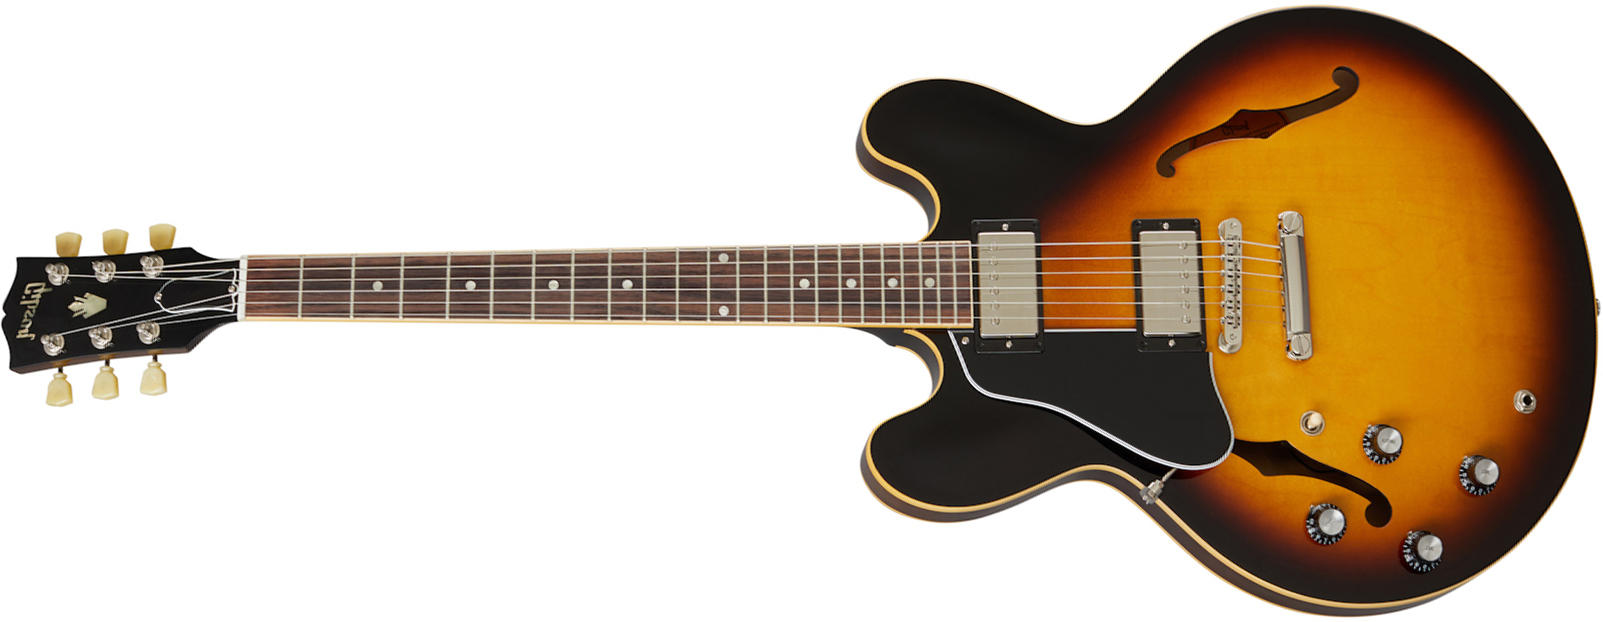 Gibson Es-335 Dot Lh Original 2020 Gaucher 2h Ht Rw - Vintage Burst - Linkshandige elektrische gitaar - Main picture